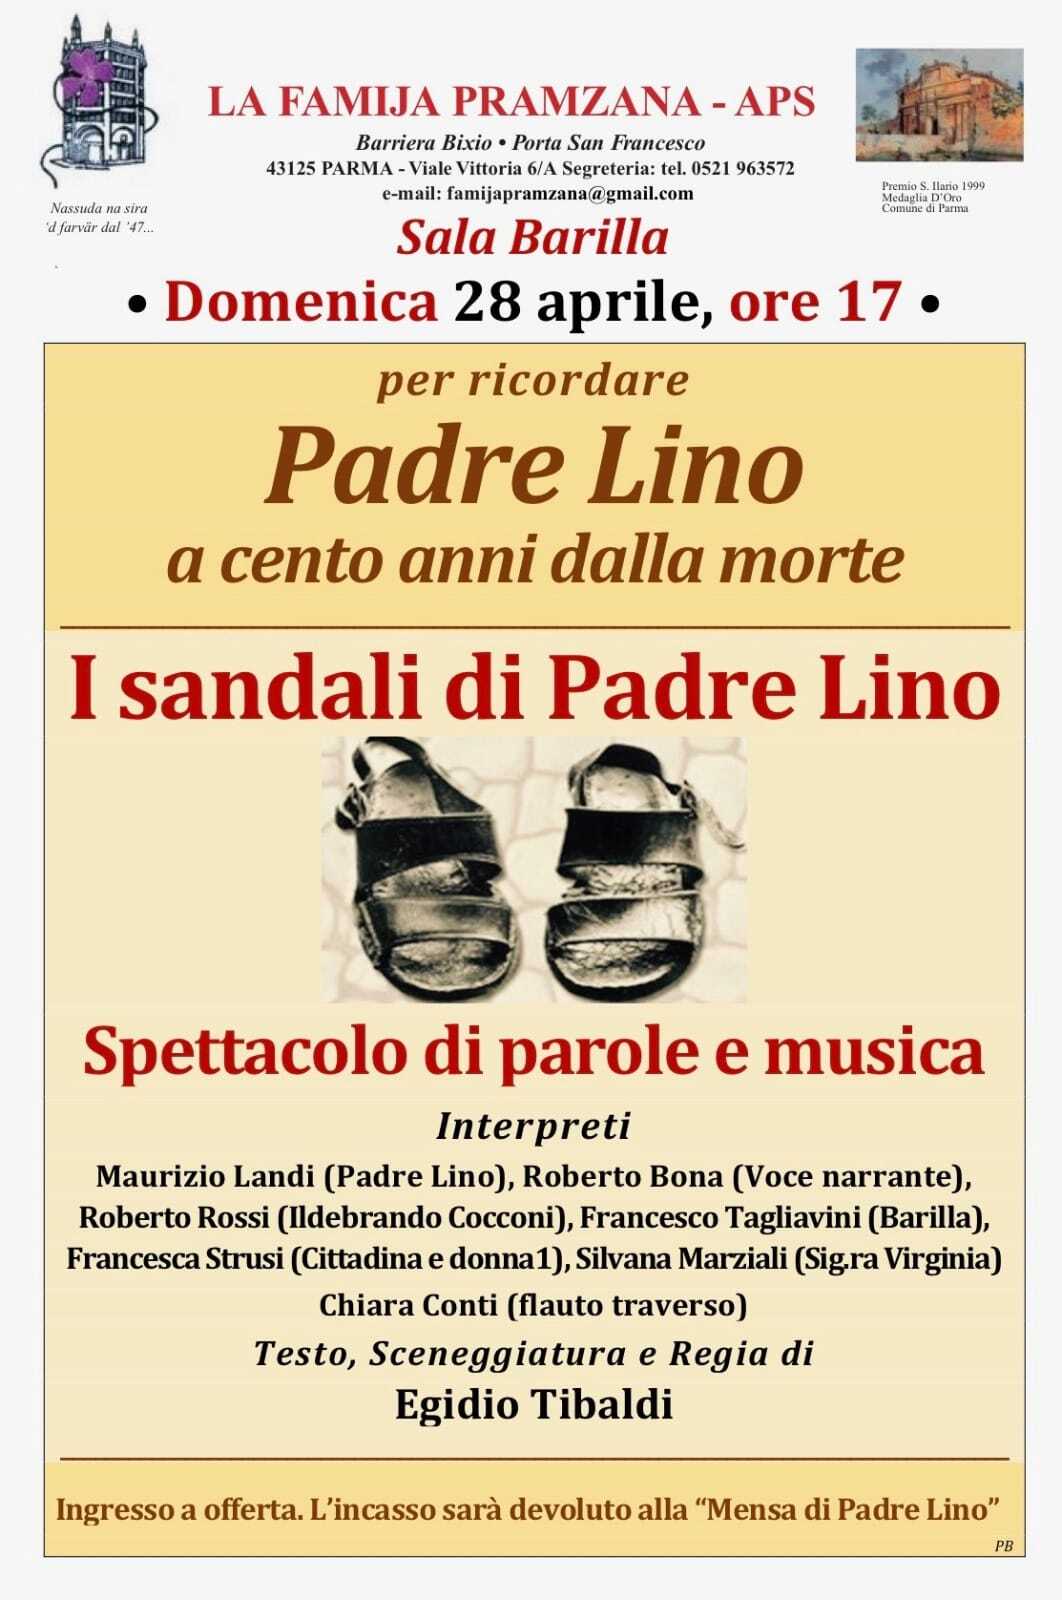 I sandali di Padre Lino,spettacolo di parole e musica alla Famija Pramzara